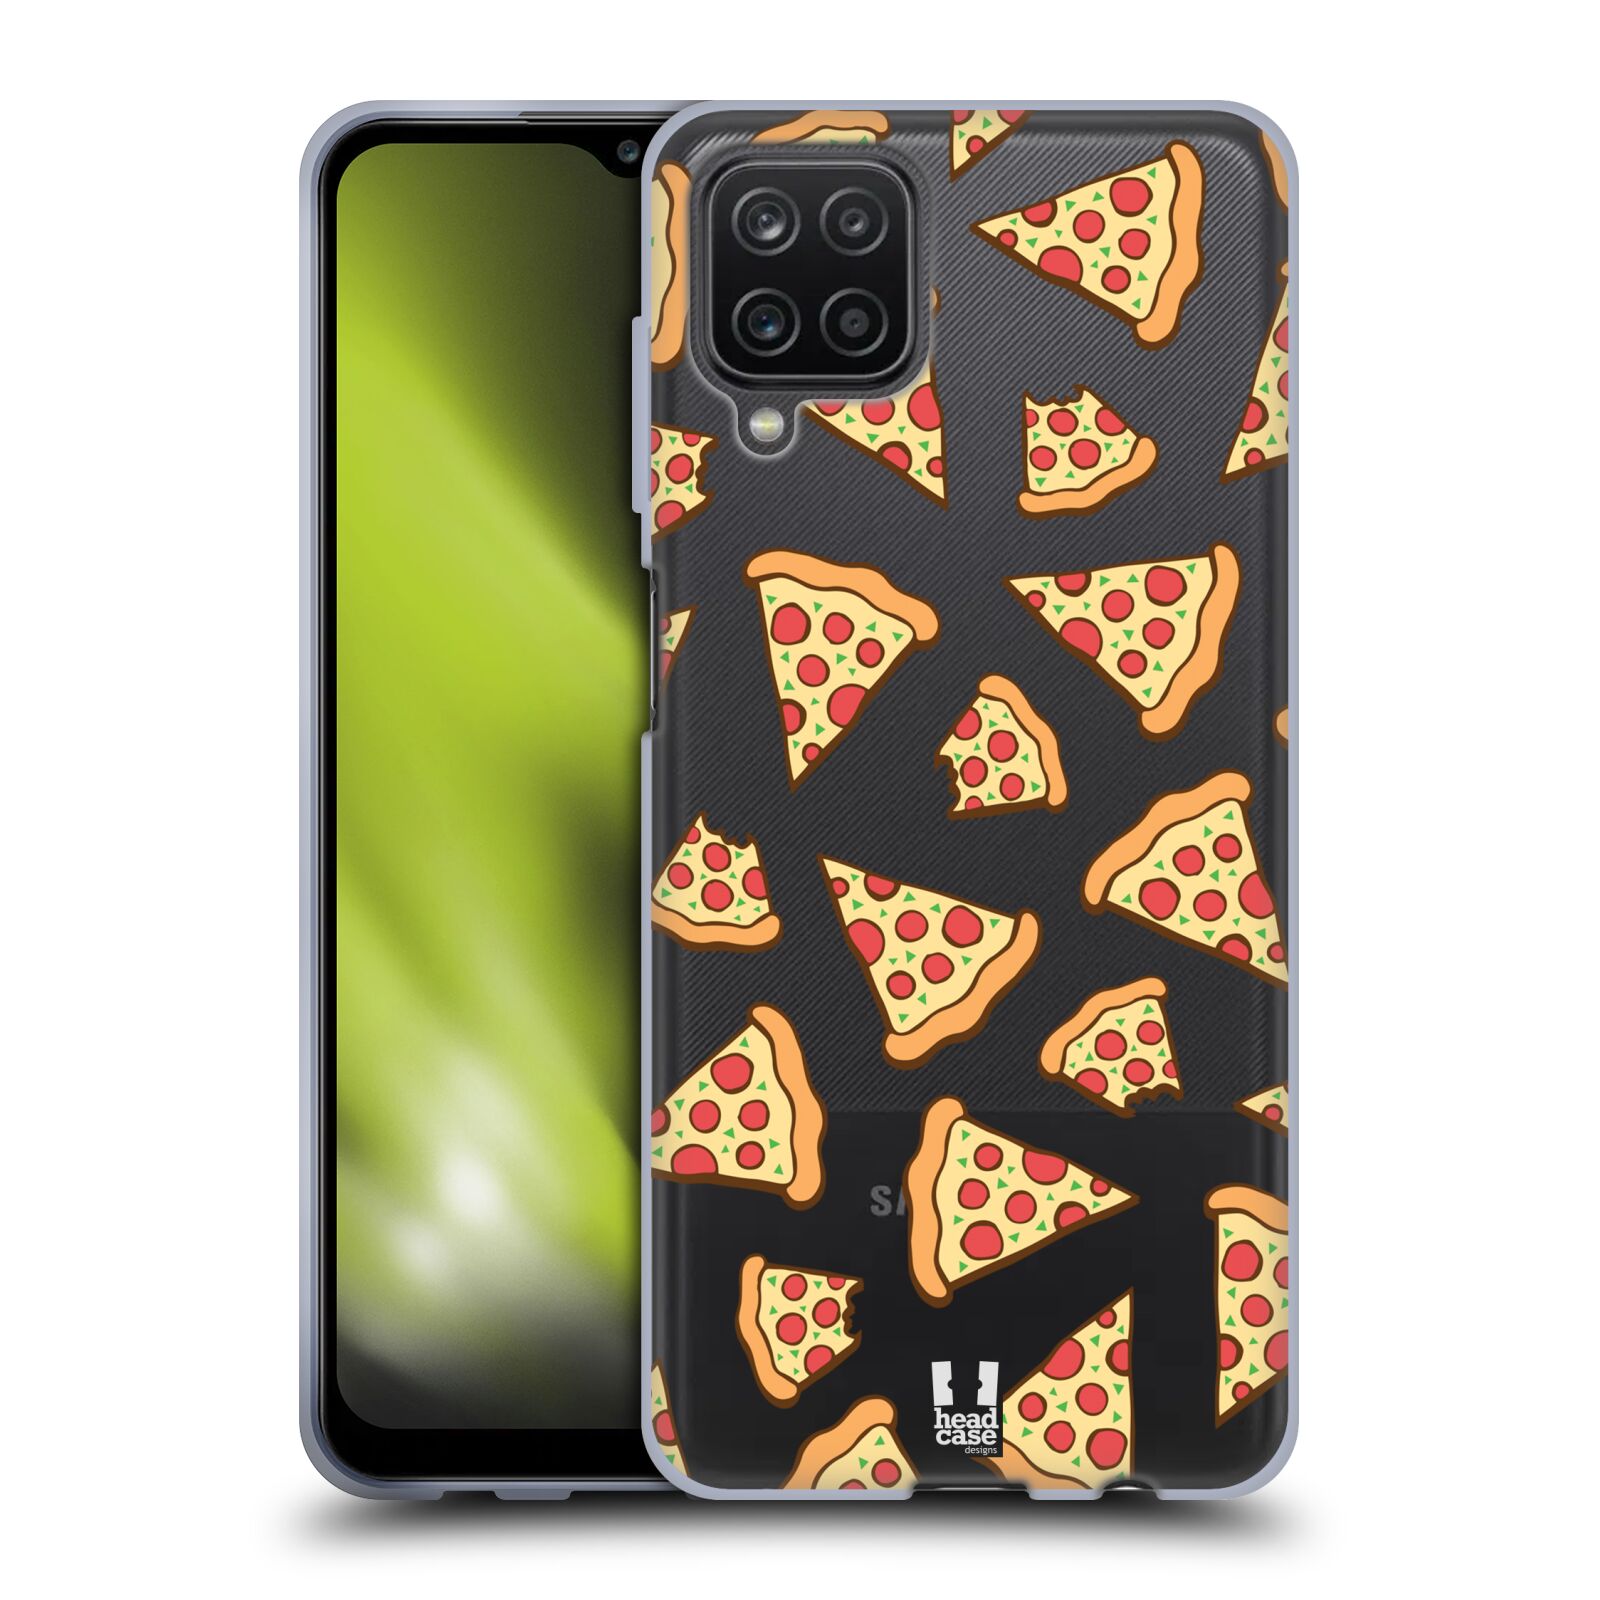 Silikonové pouzdro na mobil Samsung Galaxy A12 - Head Case - Pizza (Silikonový kryt či obal na mobilní telefon s motivem Pizza pro Samsung Galaxy A12)